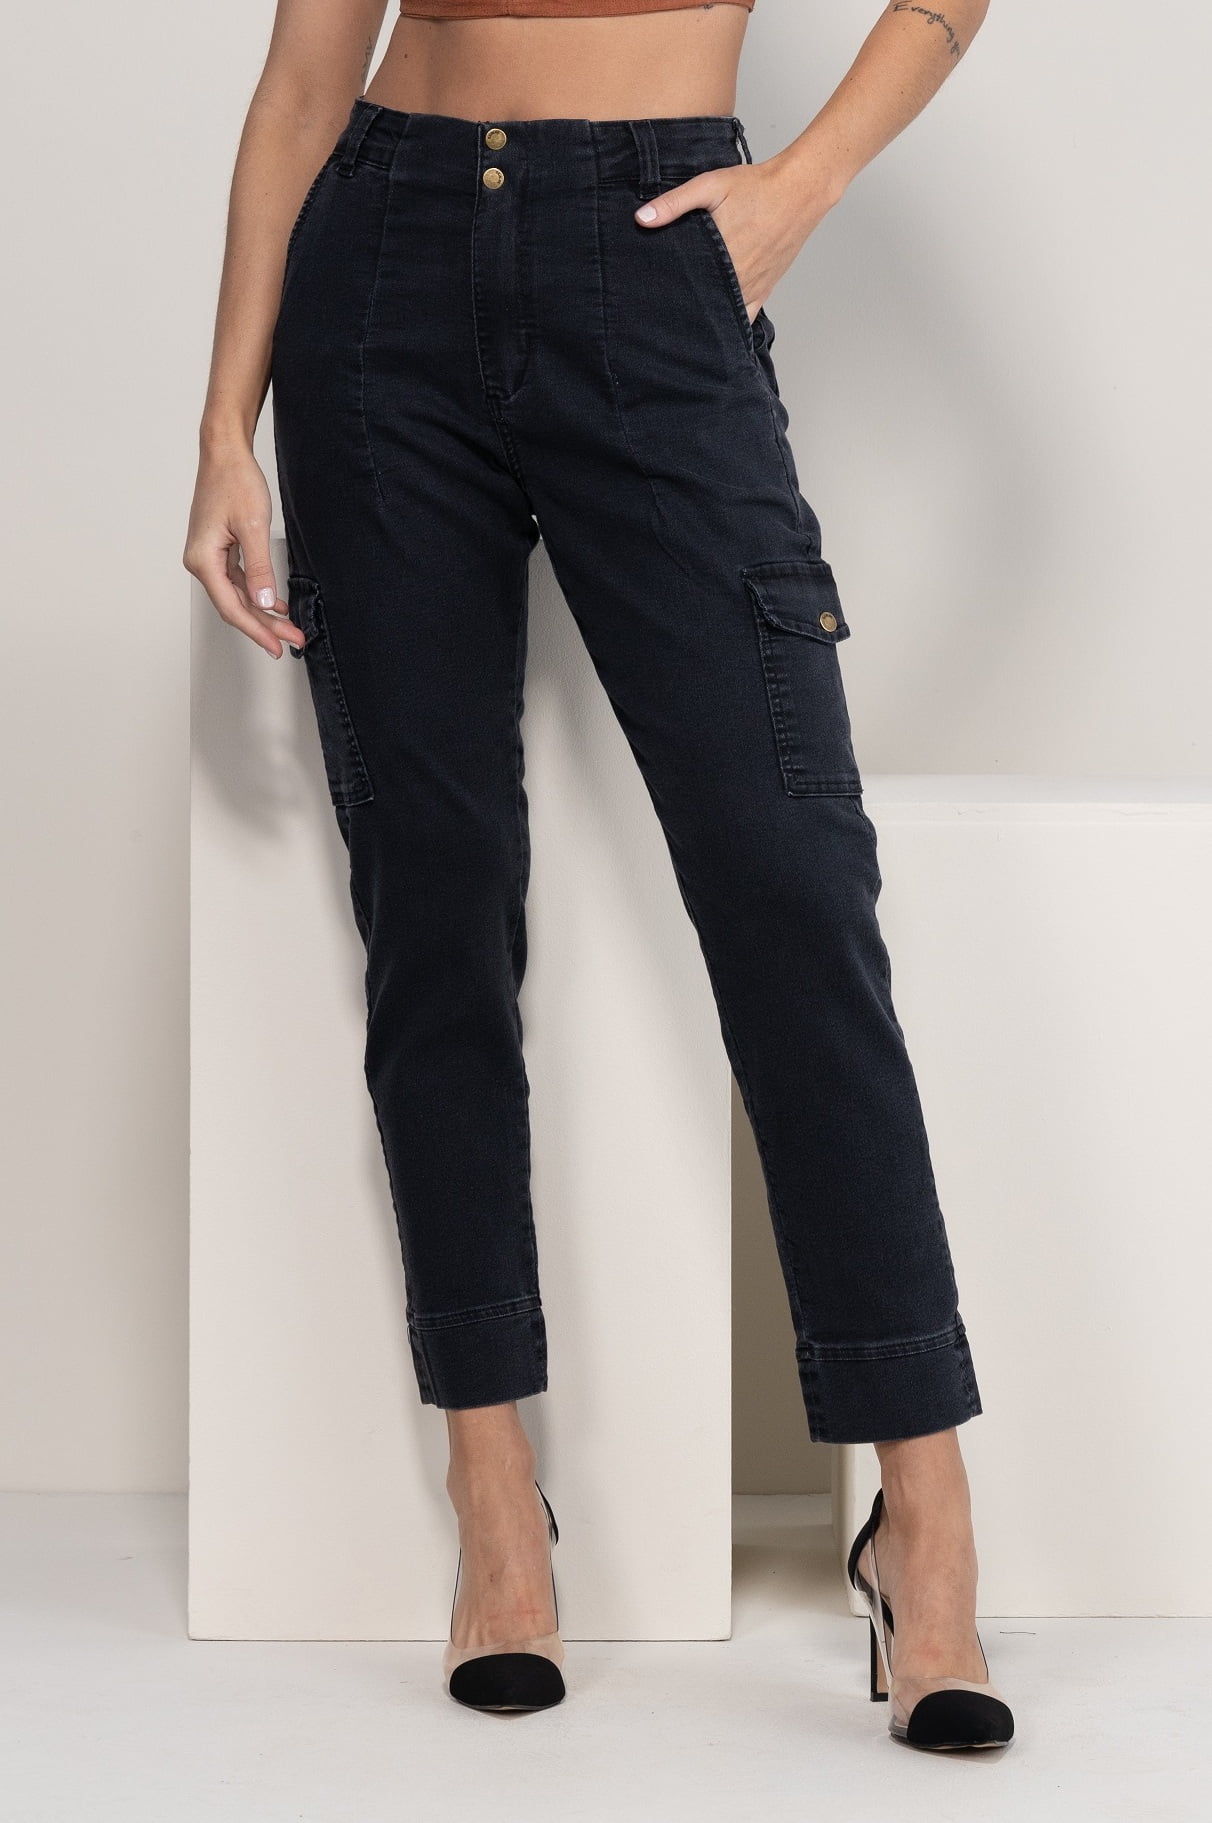 Calça Cargo Feminina Preta na Oxiblue Jeans